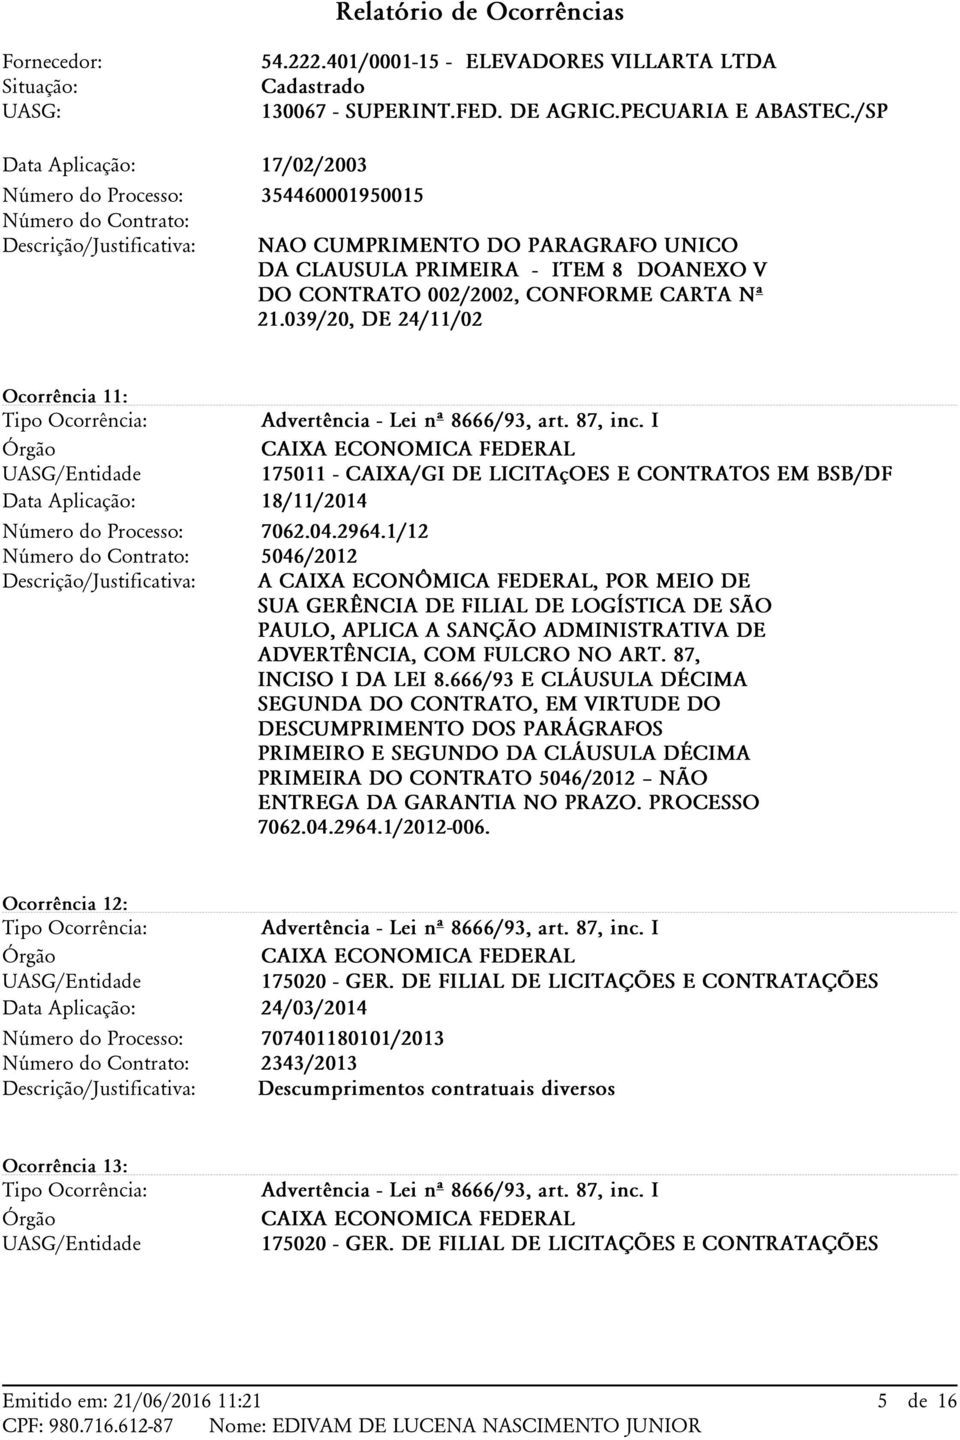 1/12 5046/2012 A CAIXA ECONÔMICA FEDERAL, POR MEIO DE SUA GERÊNCIA DE FILIAL DE LOGÍSTICA DE SÃO PAULO, APLICA A SANÇÃO ADMINISTRATIVA DE ADVERTÊNCIA, COM FULCRO NO ART. 87, INCISO I DA LEI 8.